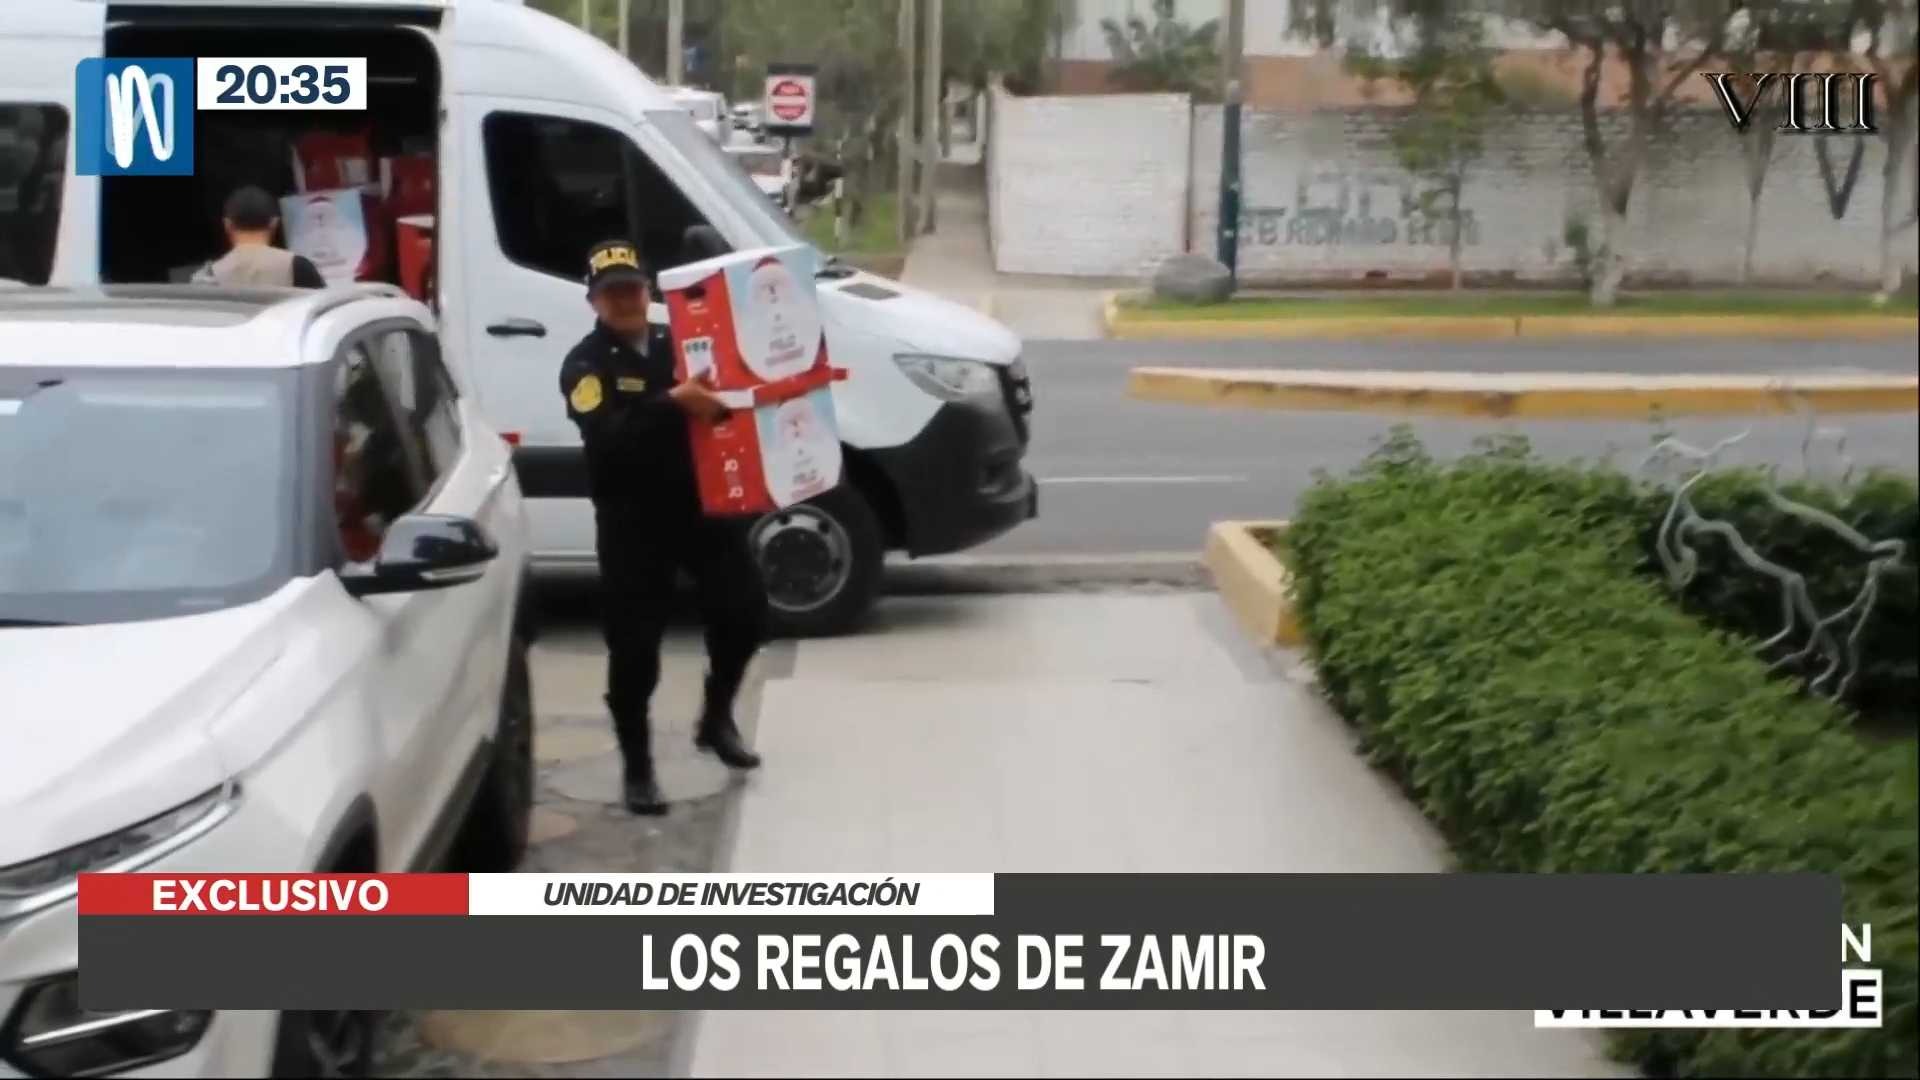 Zamir Villaverde regaló canastas navideñas a comisario de La Molina